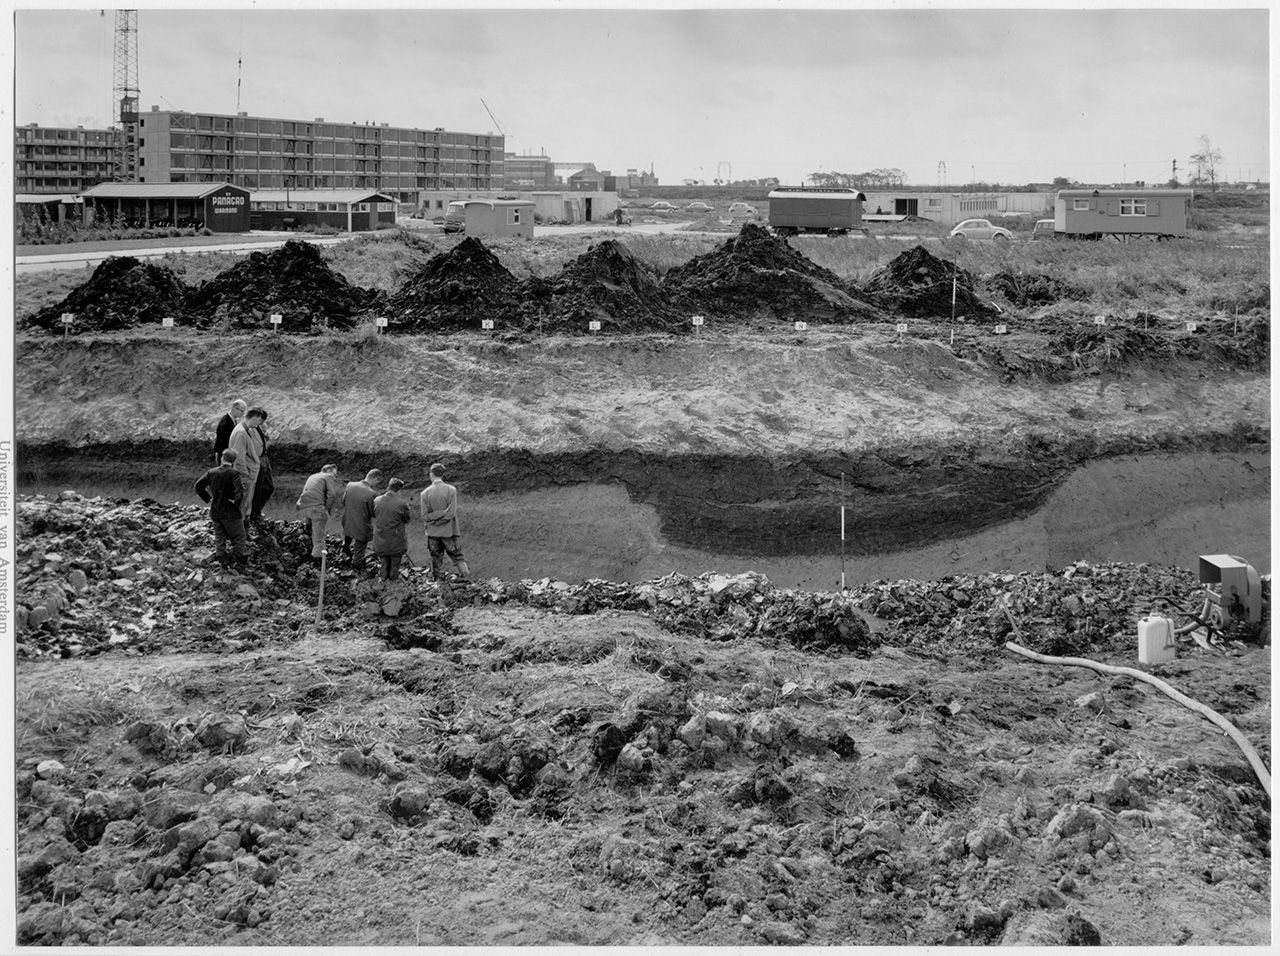 Wetenschappers bestuderen de archeologische sporen. Op de achtergrond de Westwijk in opbouw. Collectie Archeologie Vlaardingen, 07.003_id 187.